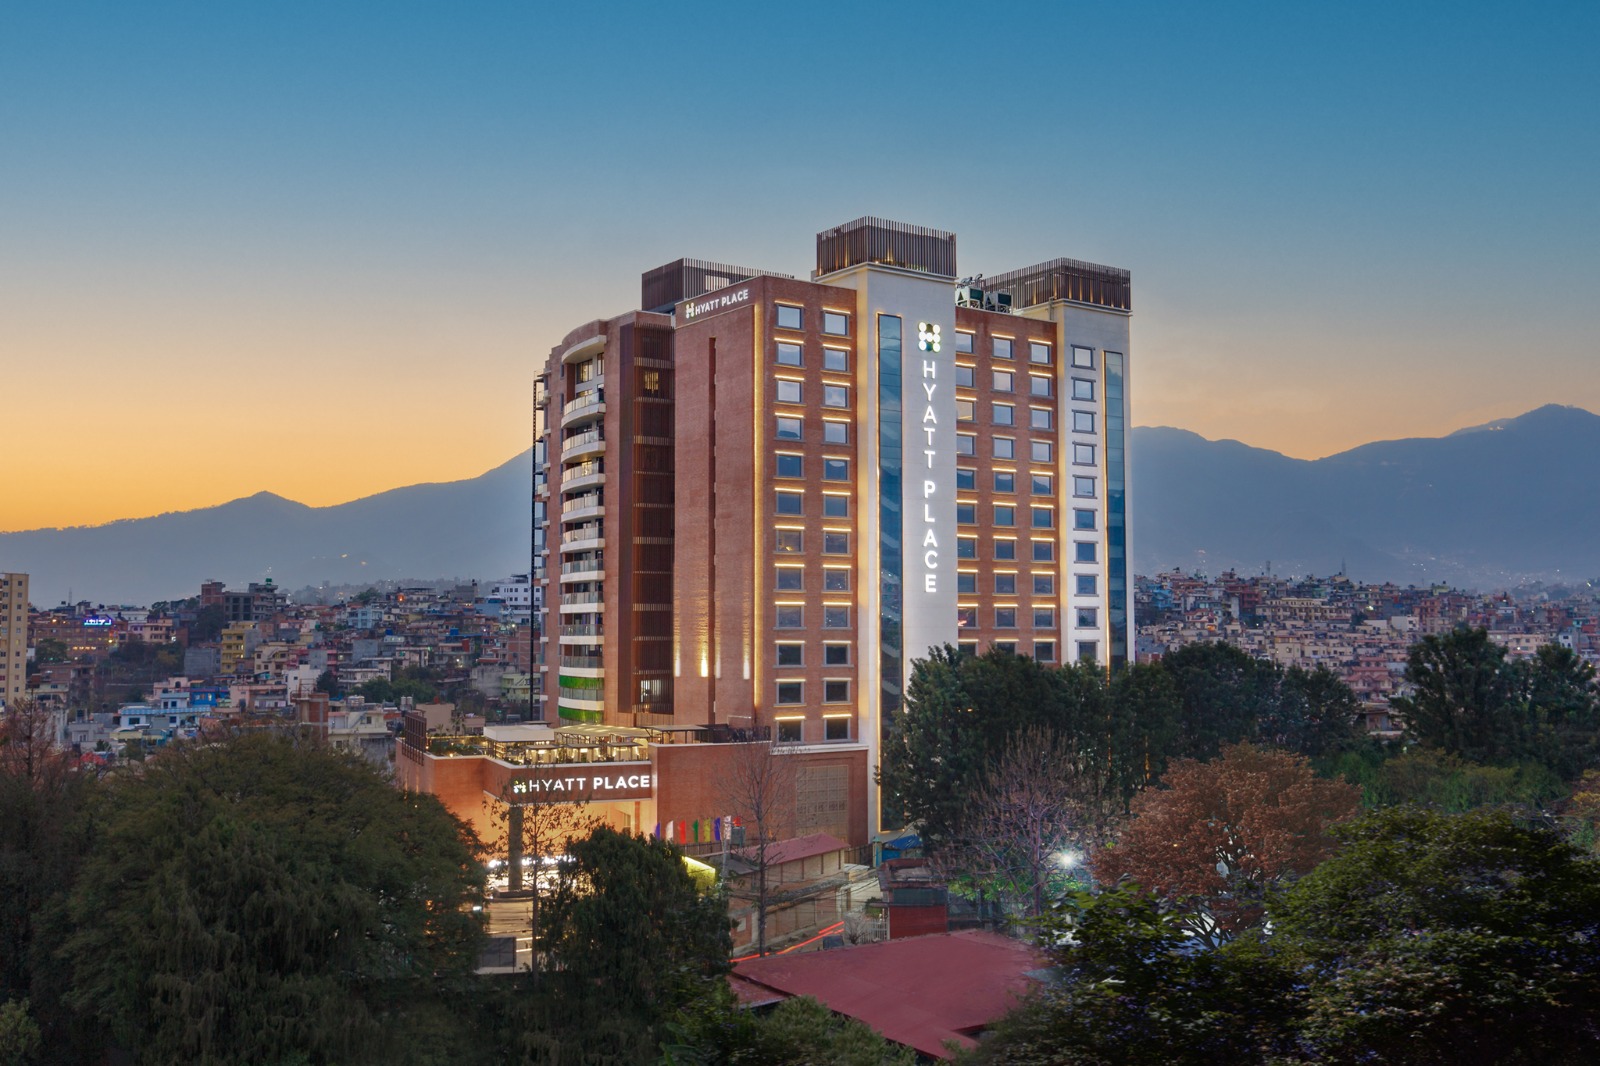  Hyatt & City Hotel announce plans for Hyatt Centric Hotel in Nepal with Hyatt Centric Soalteemode Kathmandu